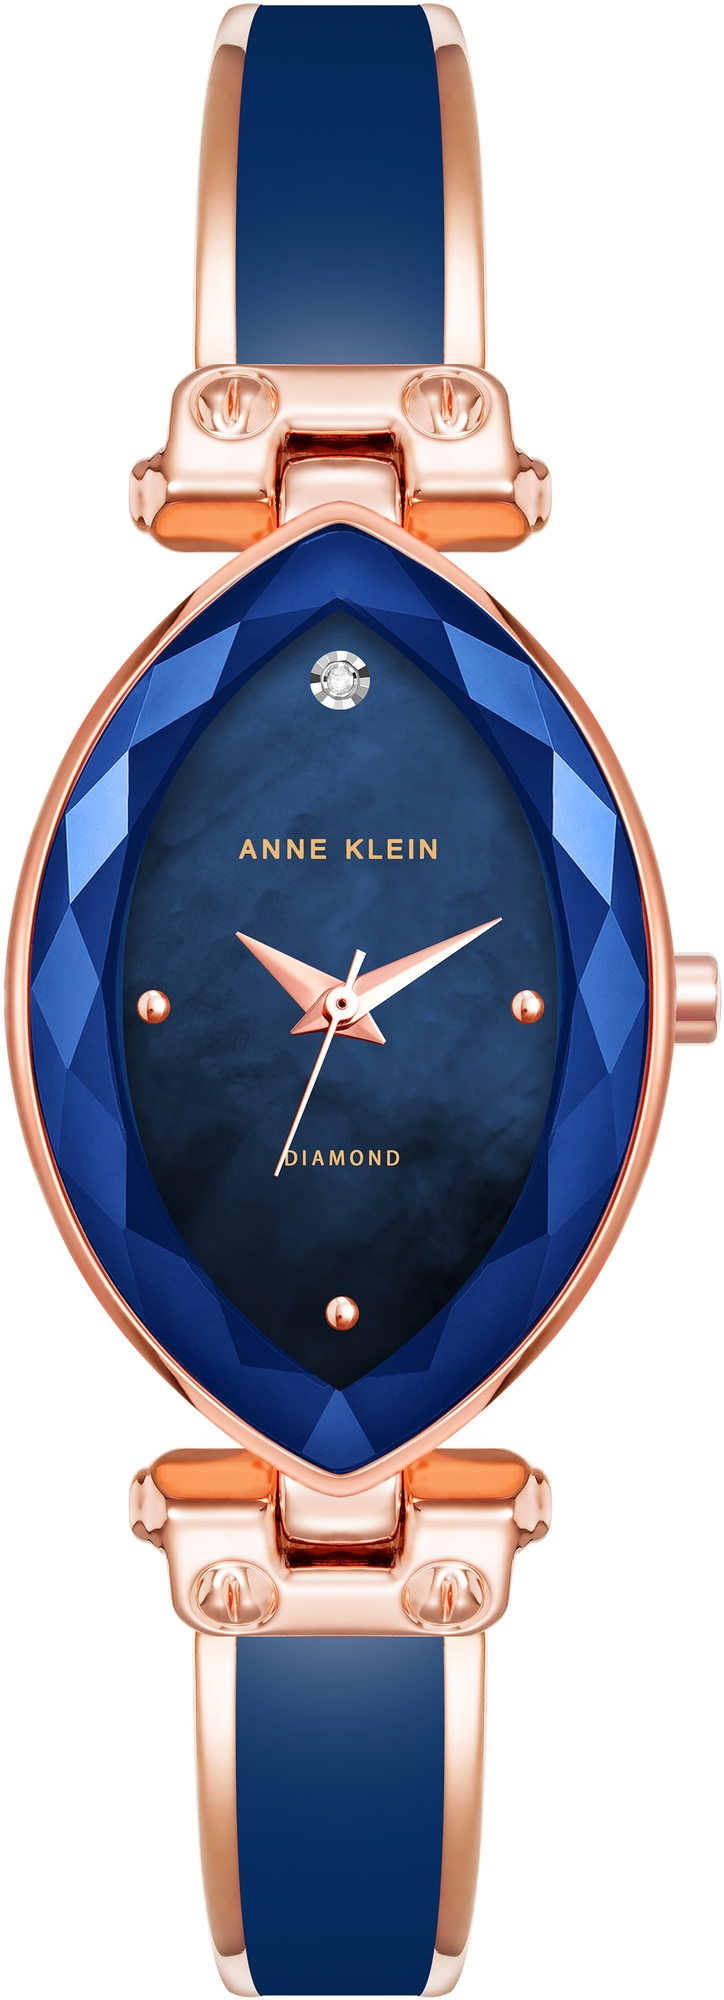 Наручные часы Anne Klein 4018NVRG часы anne klein 1610bkgb